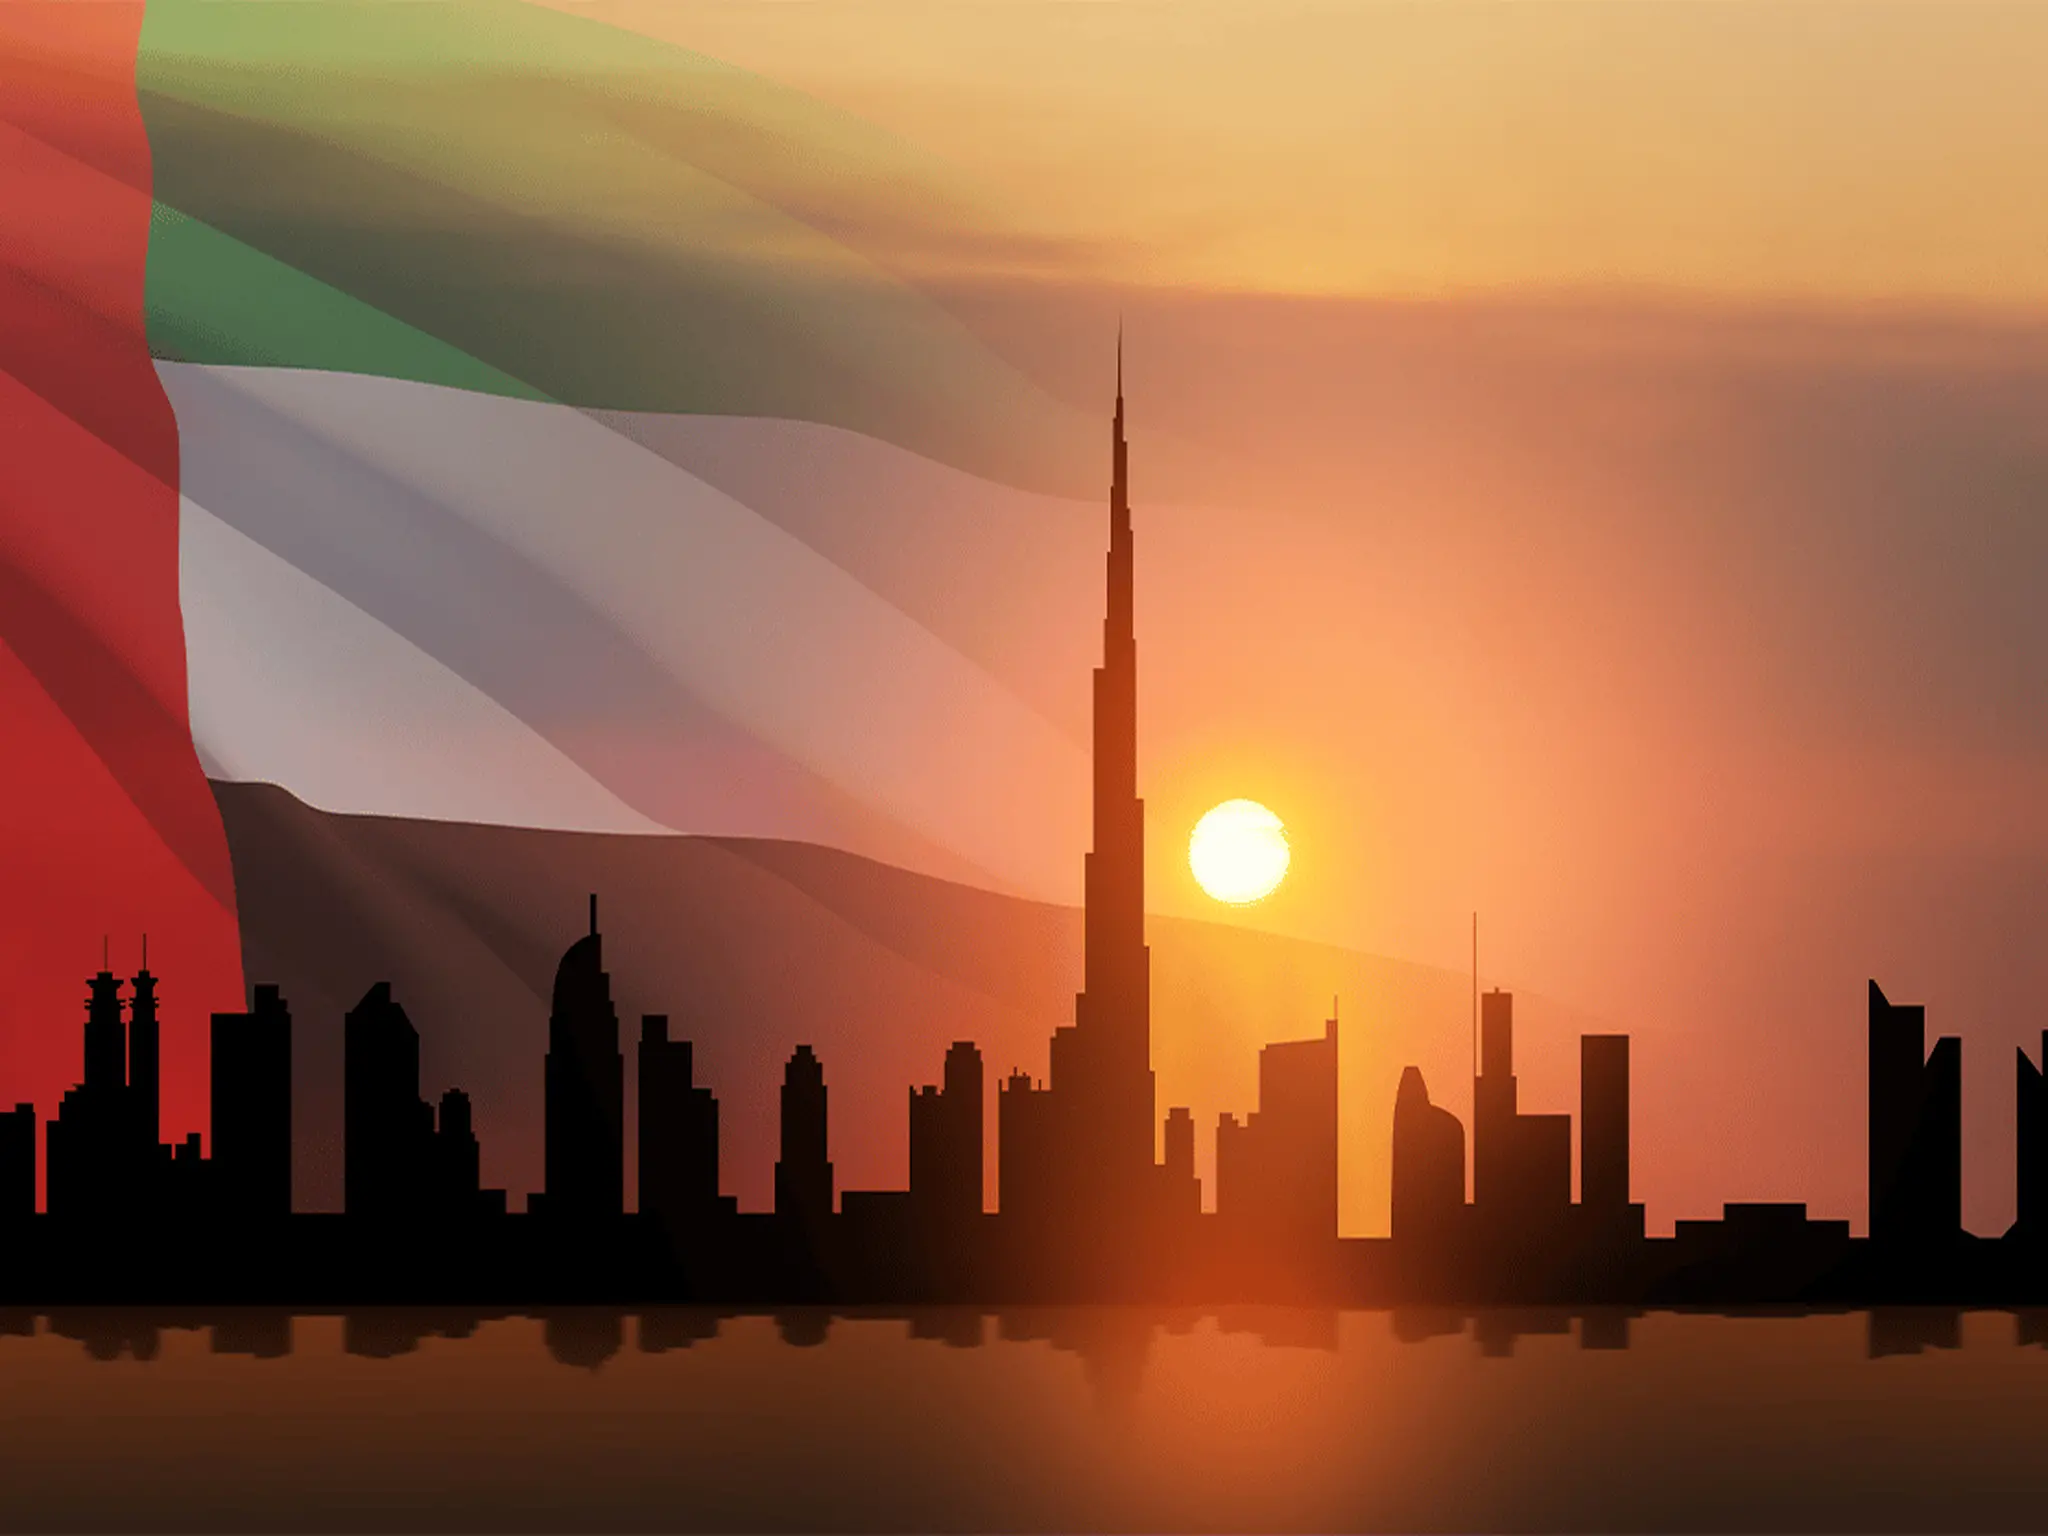 القانون الإماراتي يحظر بعض الأعمال الخيرية في رمضان والسلطات تحذر المواطنين والمقيمين